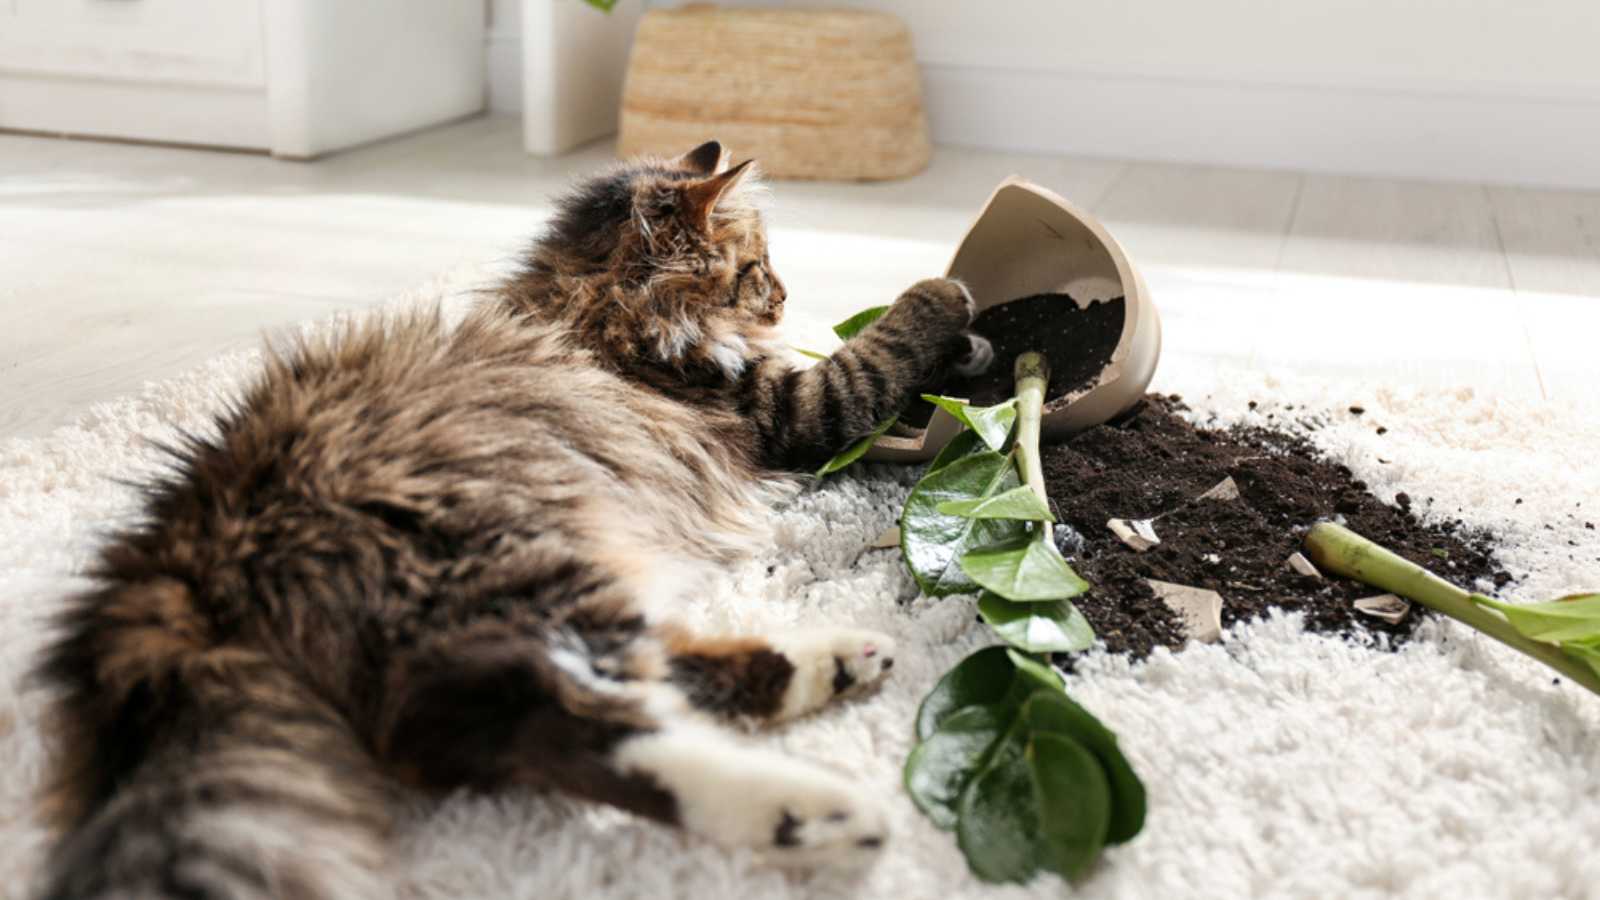 Cat near overturned houseplant on light carpet at home